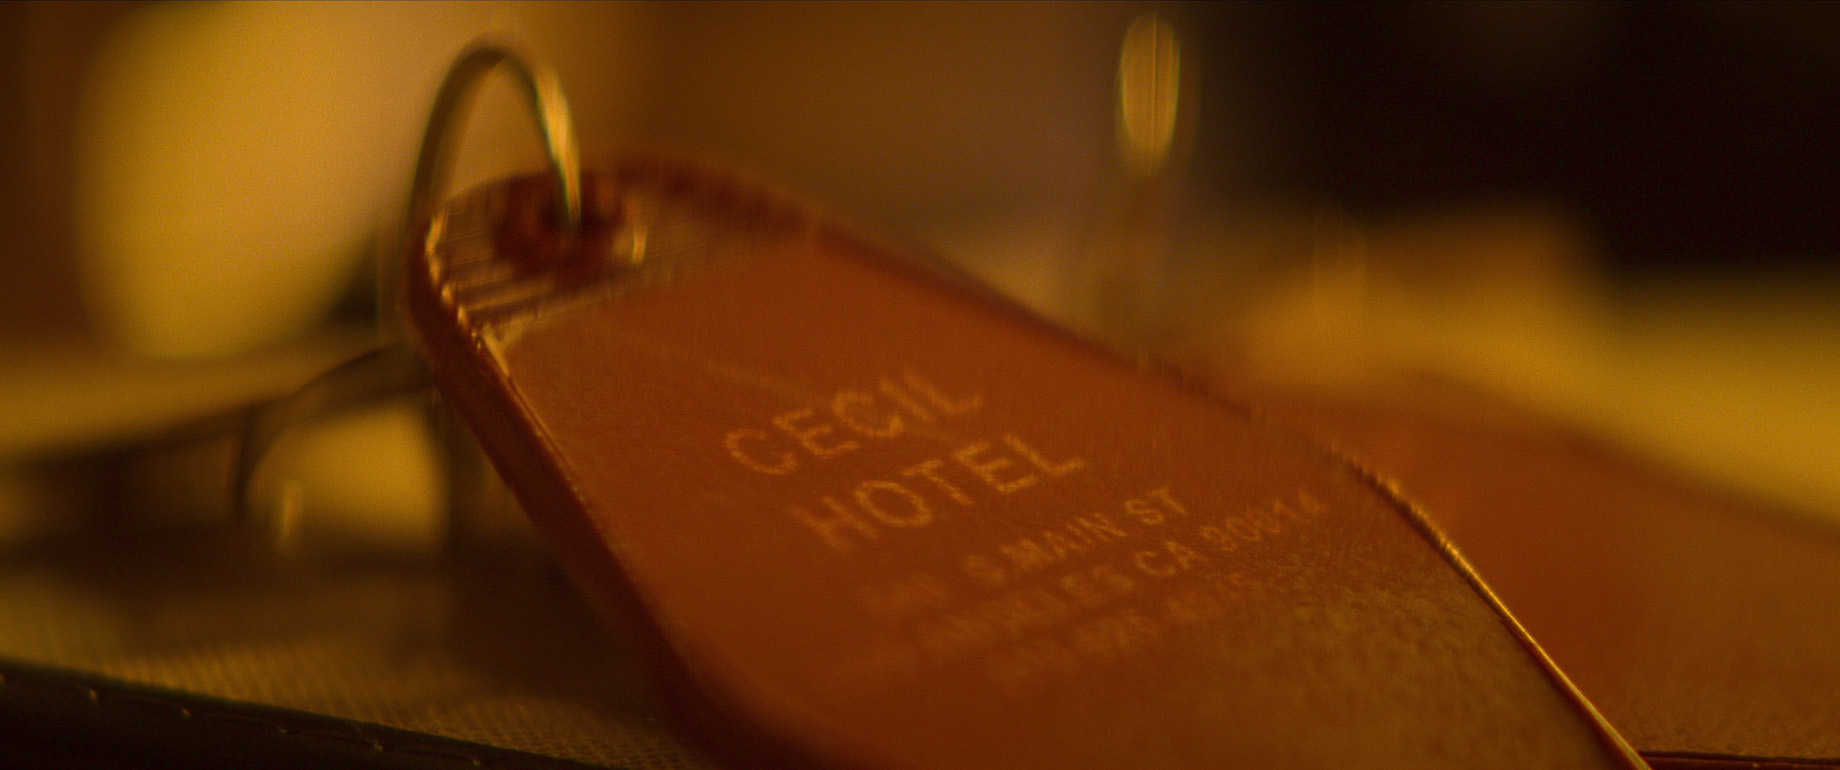 Cecil Hotel true crime